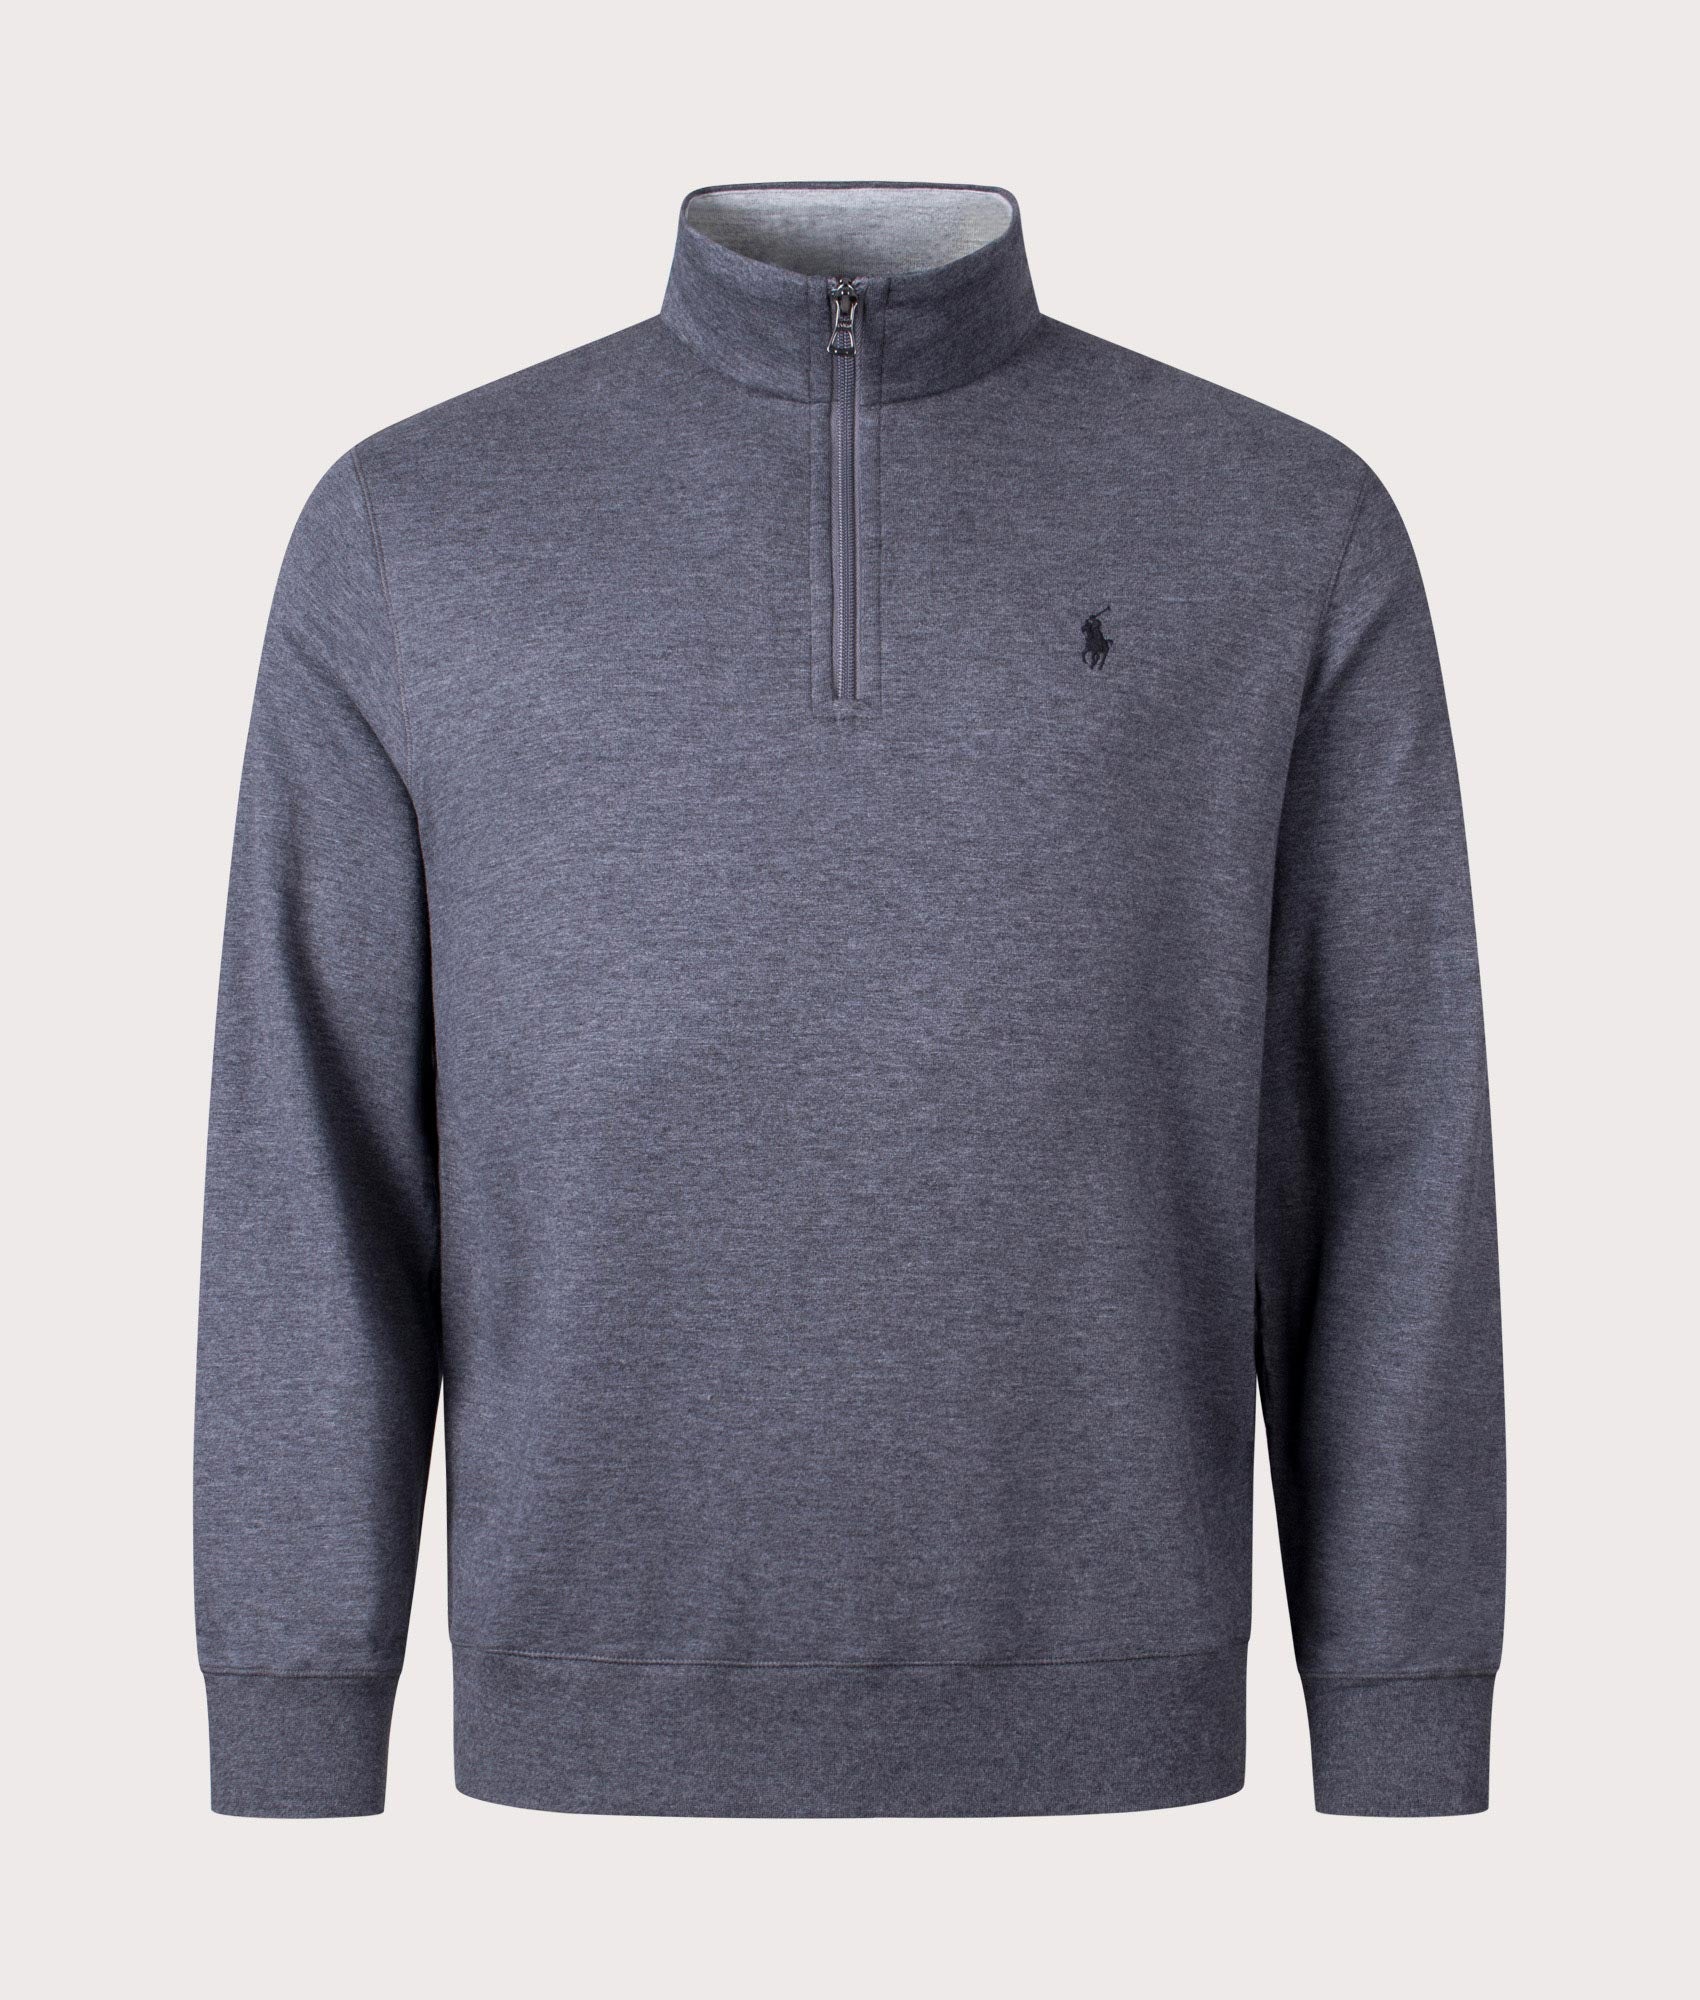 Polo Ralph Lauren Mens Quarter Zip Sweatshirt - Colour: 052 Barclay Heather - Size: Large